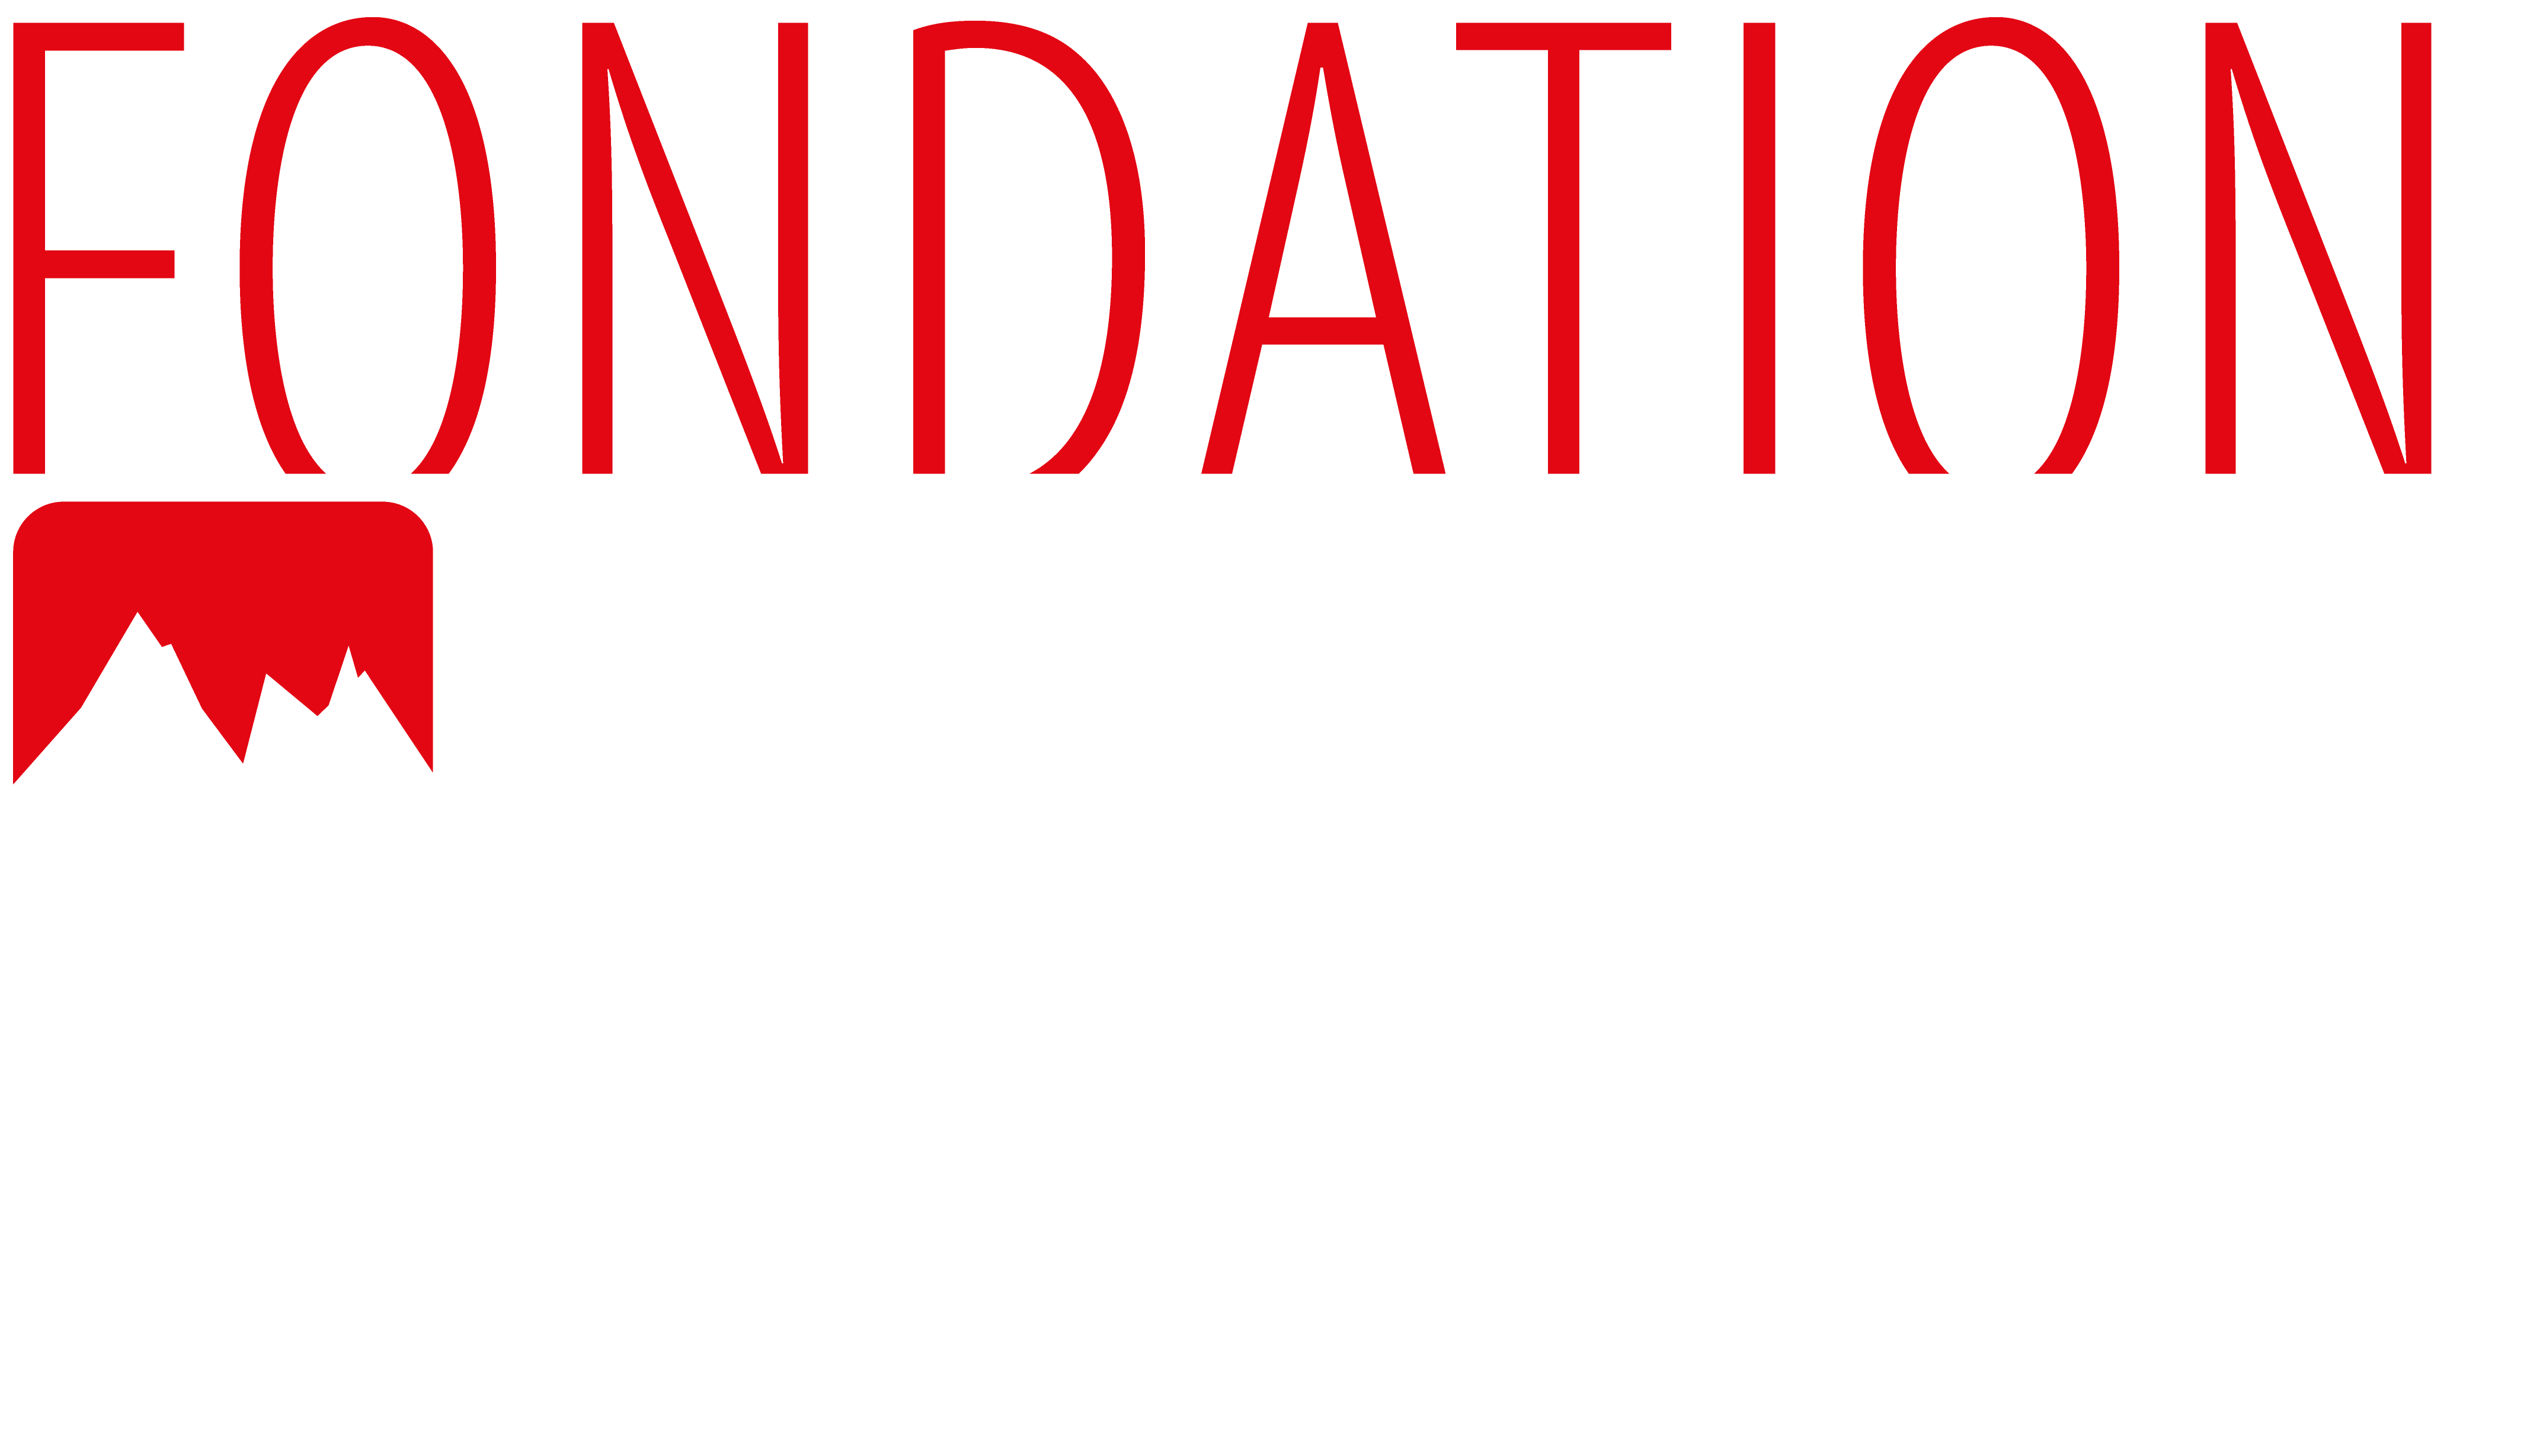 Logo Patrouille des Glaciers